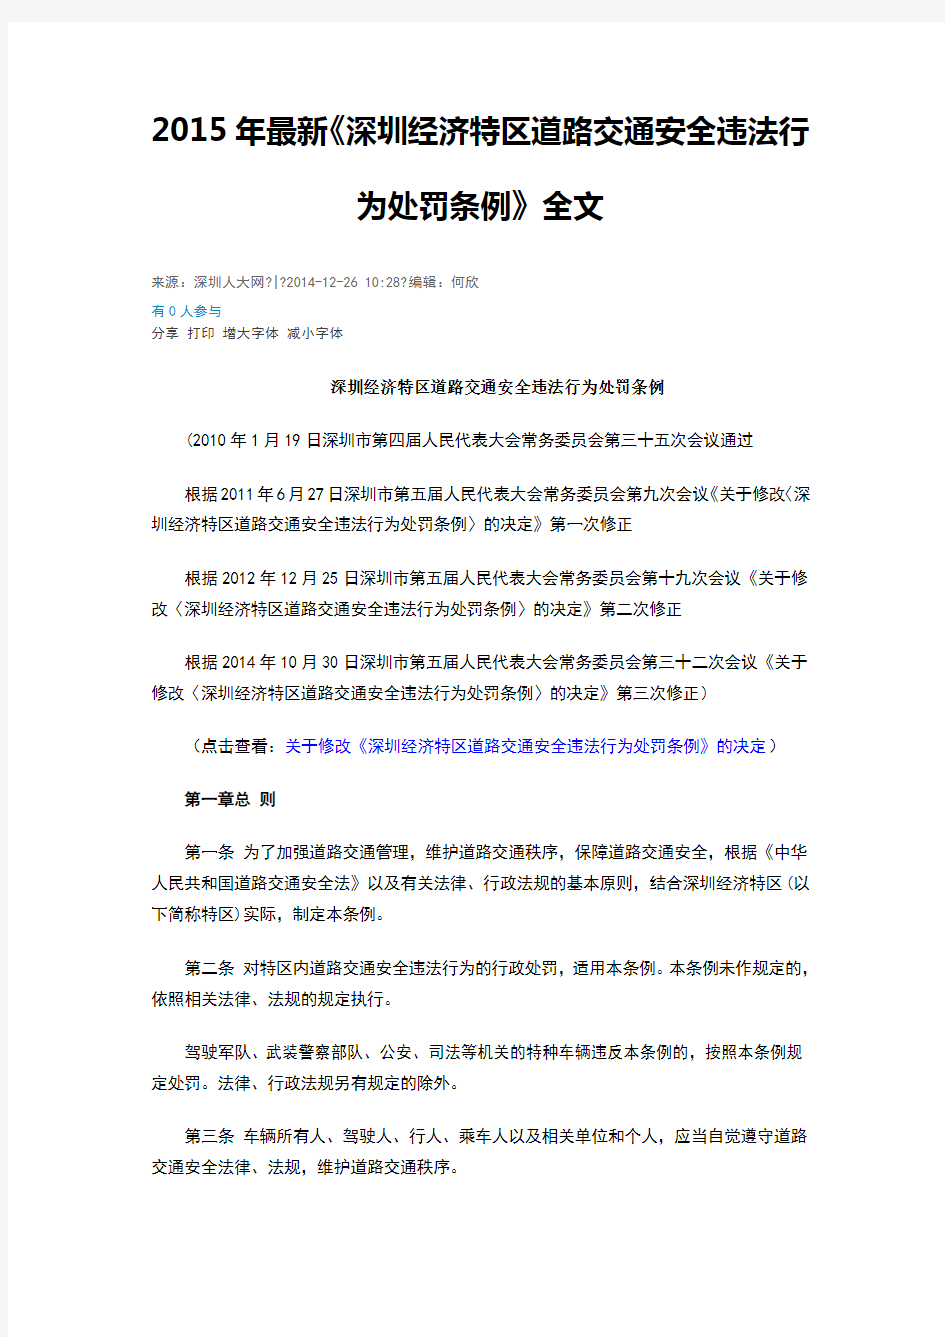 深圳经济特区道路交通安全违法行为处罚条例